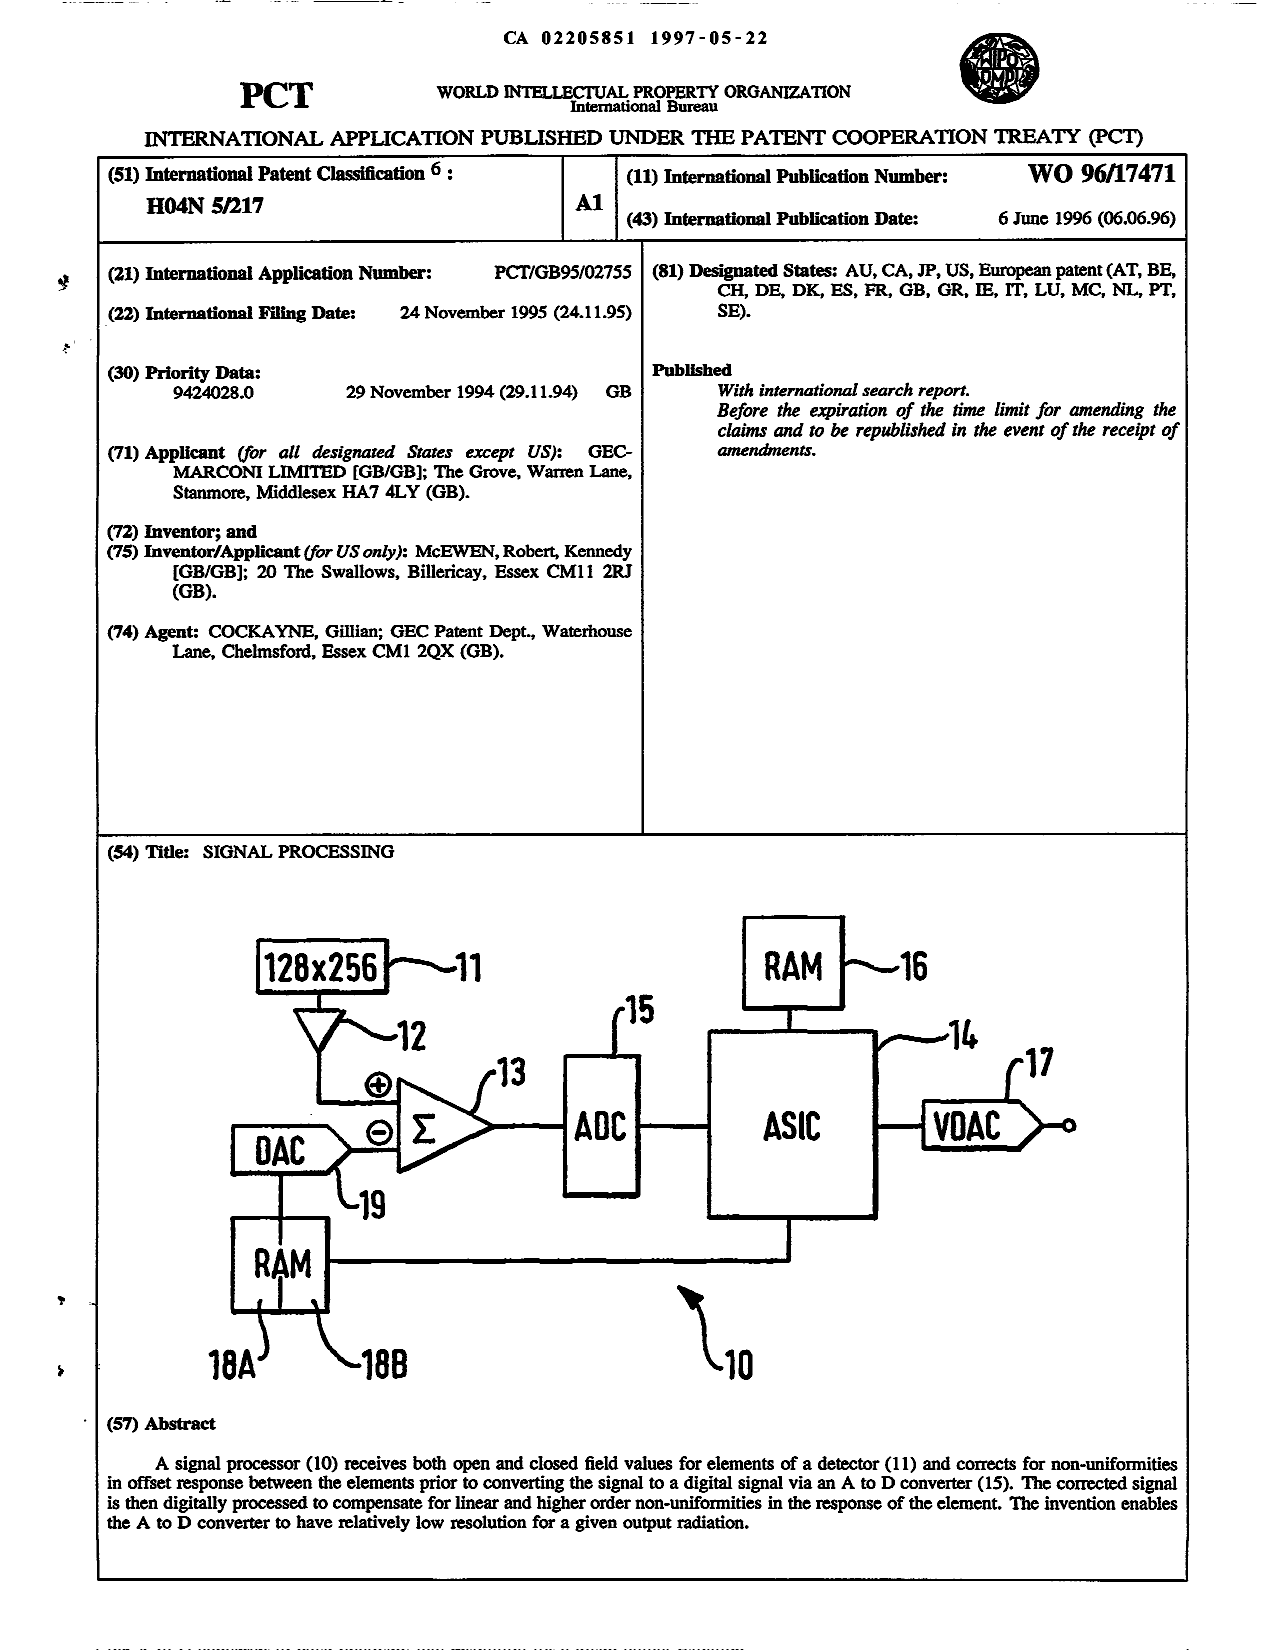 Document de brevet canadien 2205851. Abrégé 19970522. Image 1 de 1